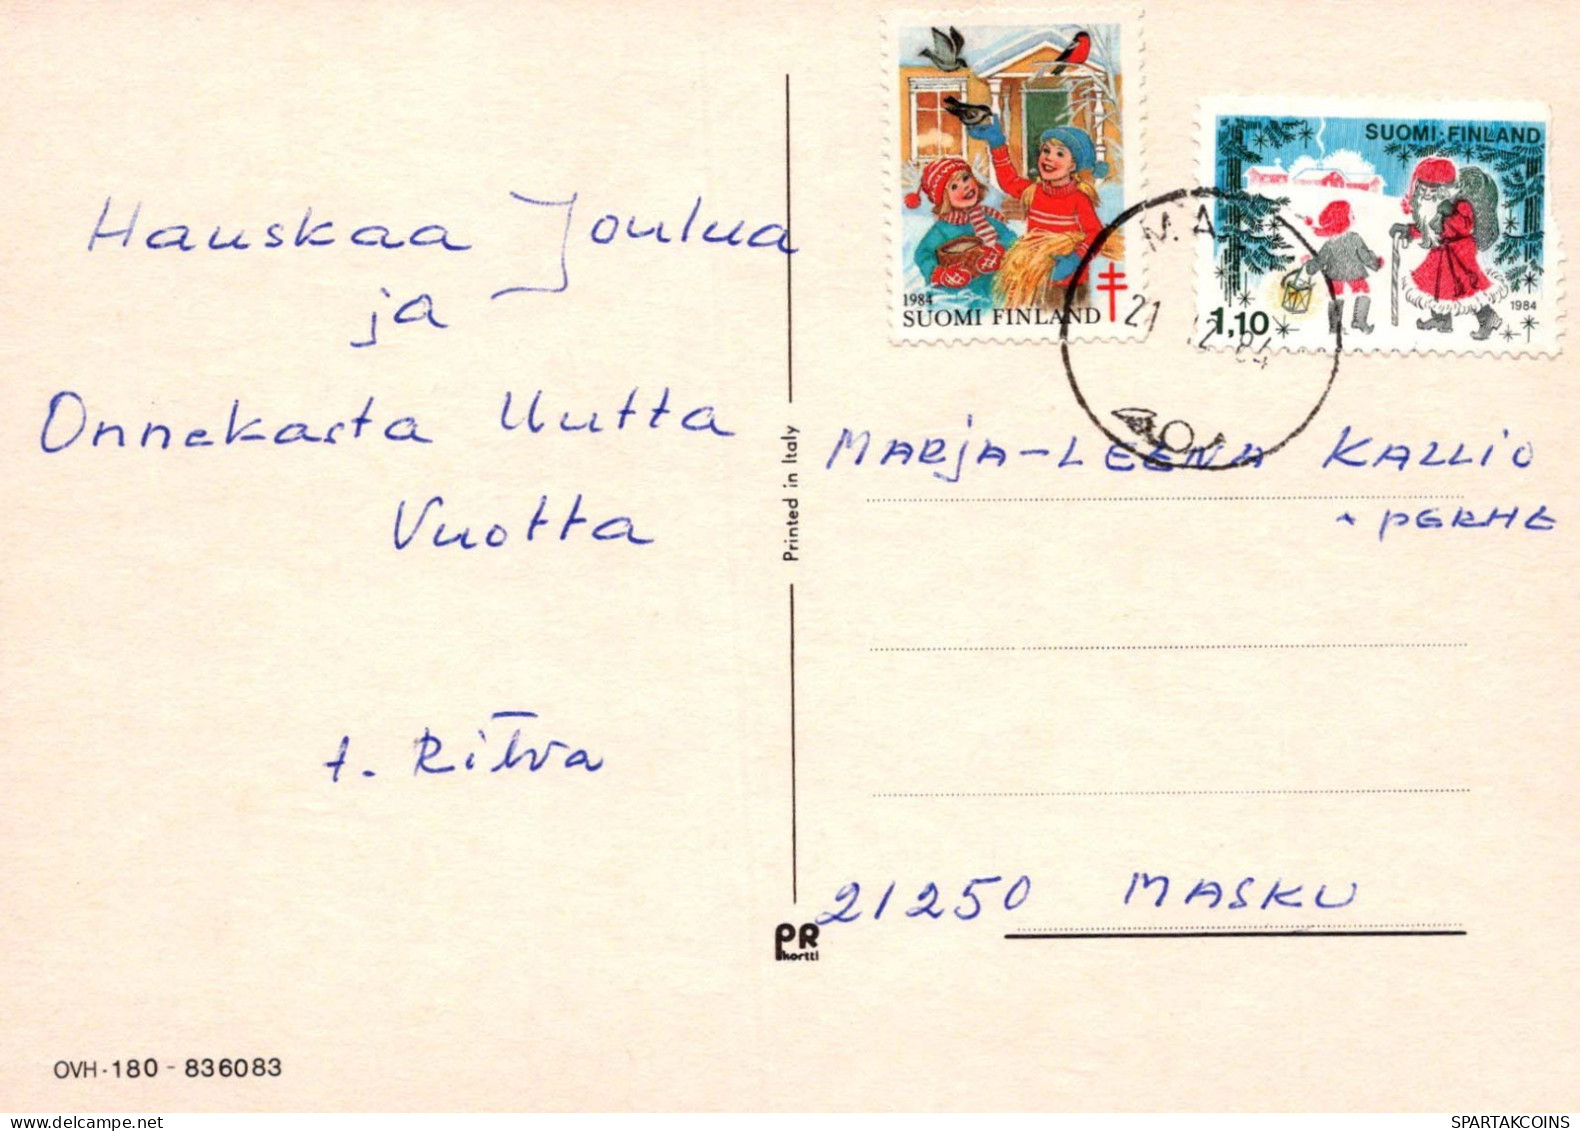 FLOWERS Vintage Ansichtskarte Postkarte CPSM #PAR821.DE - Fleurs